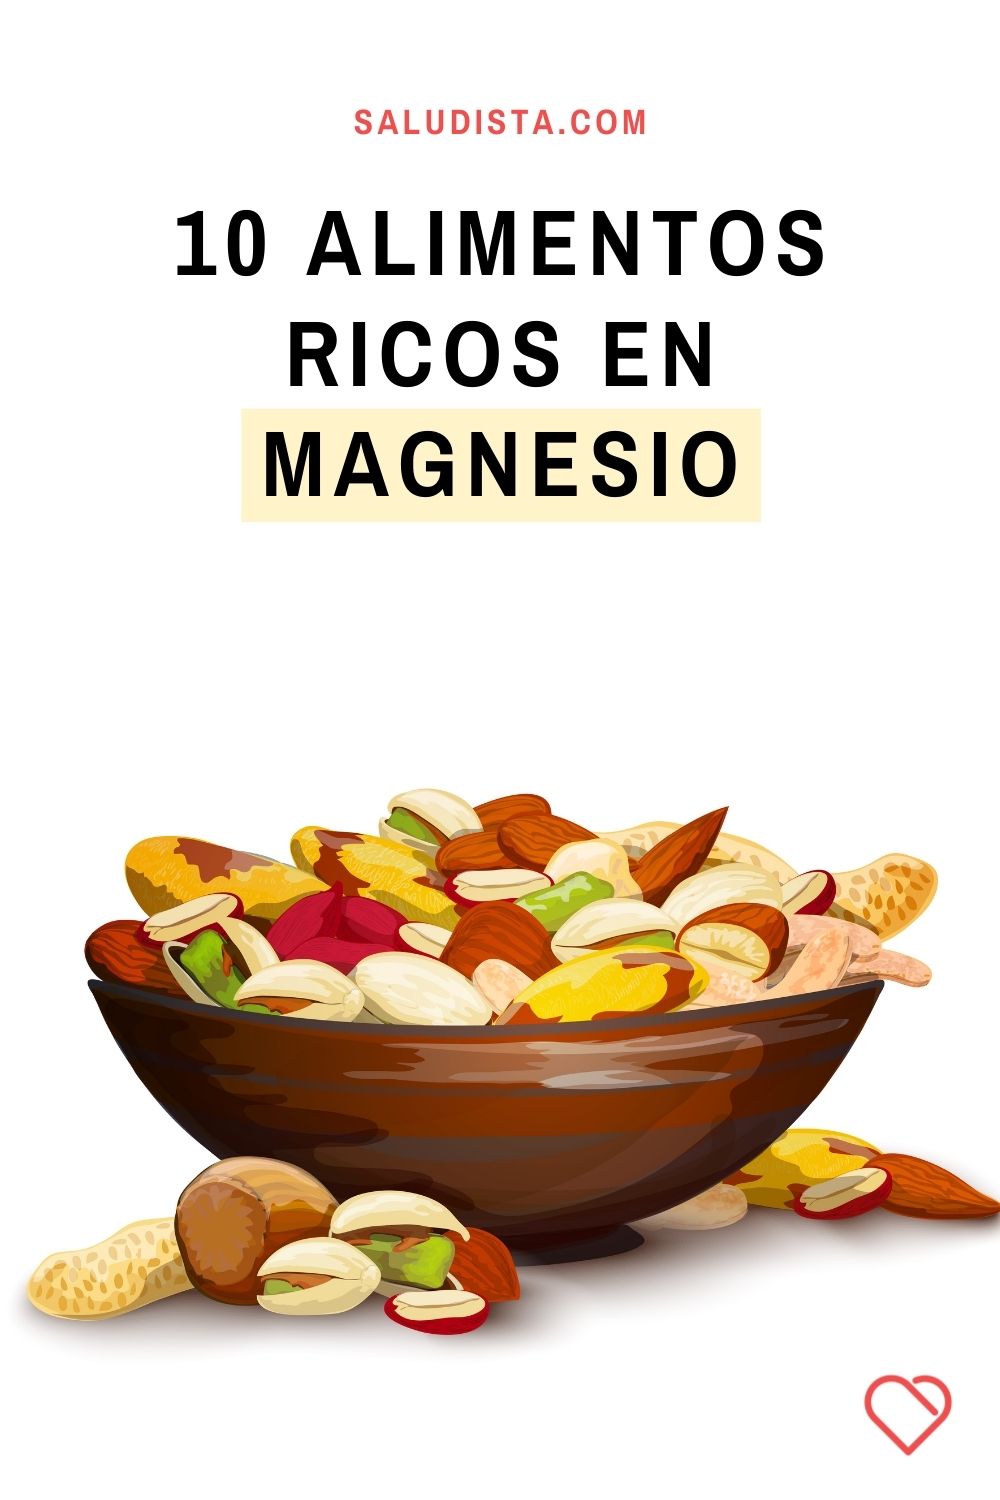 10 Alimentos ricos en magnesio